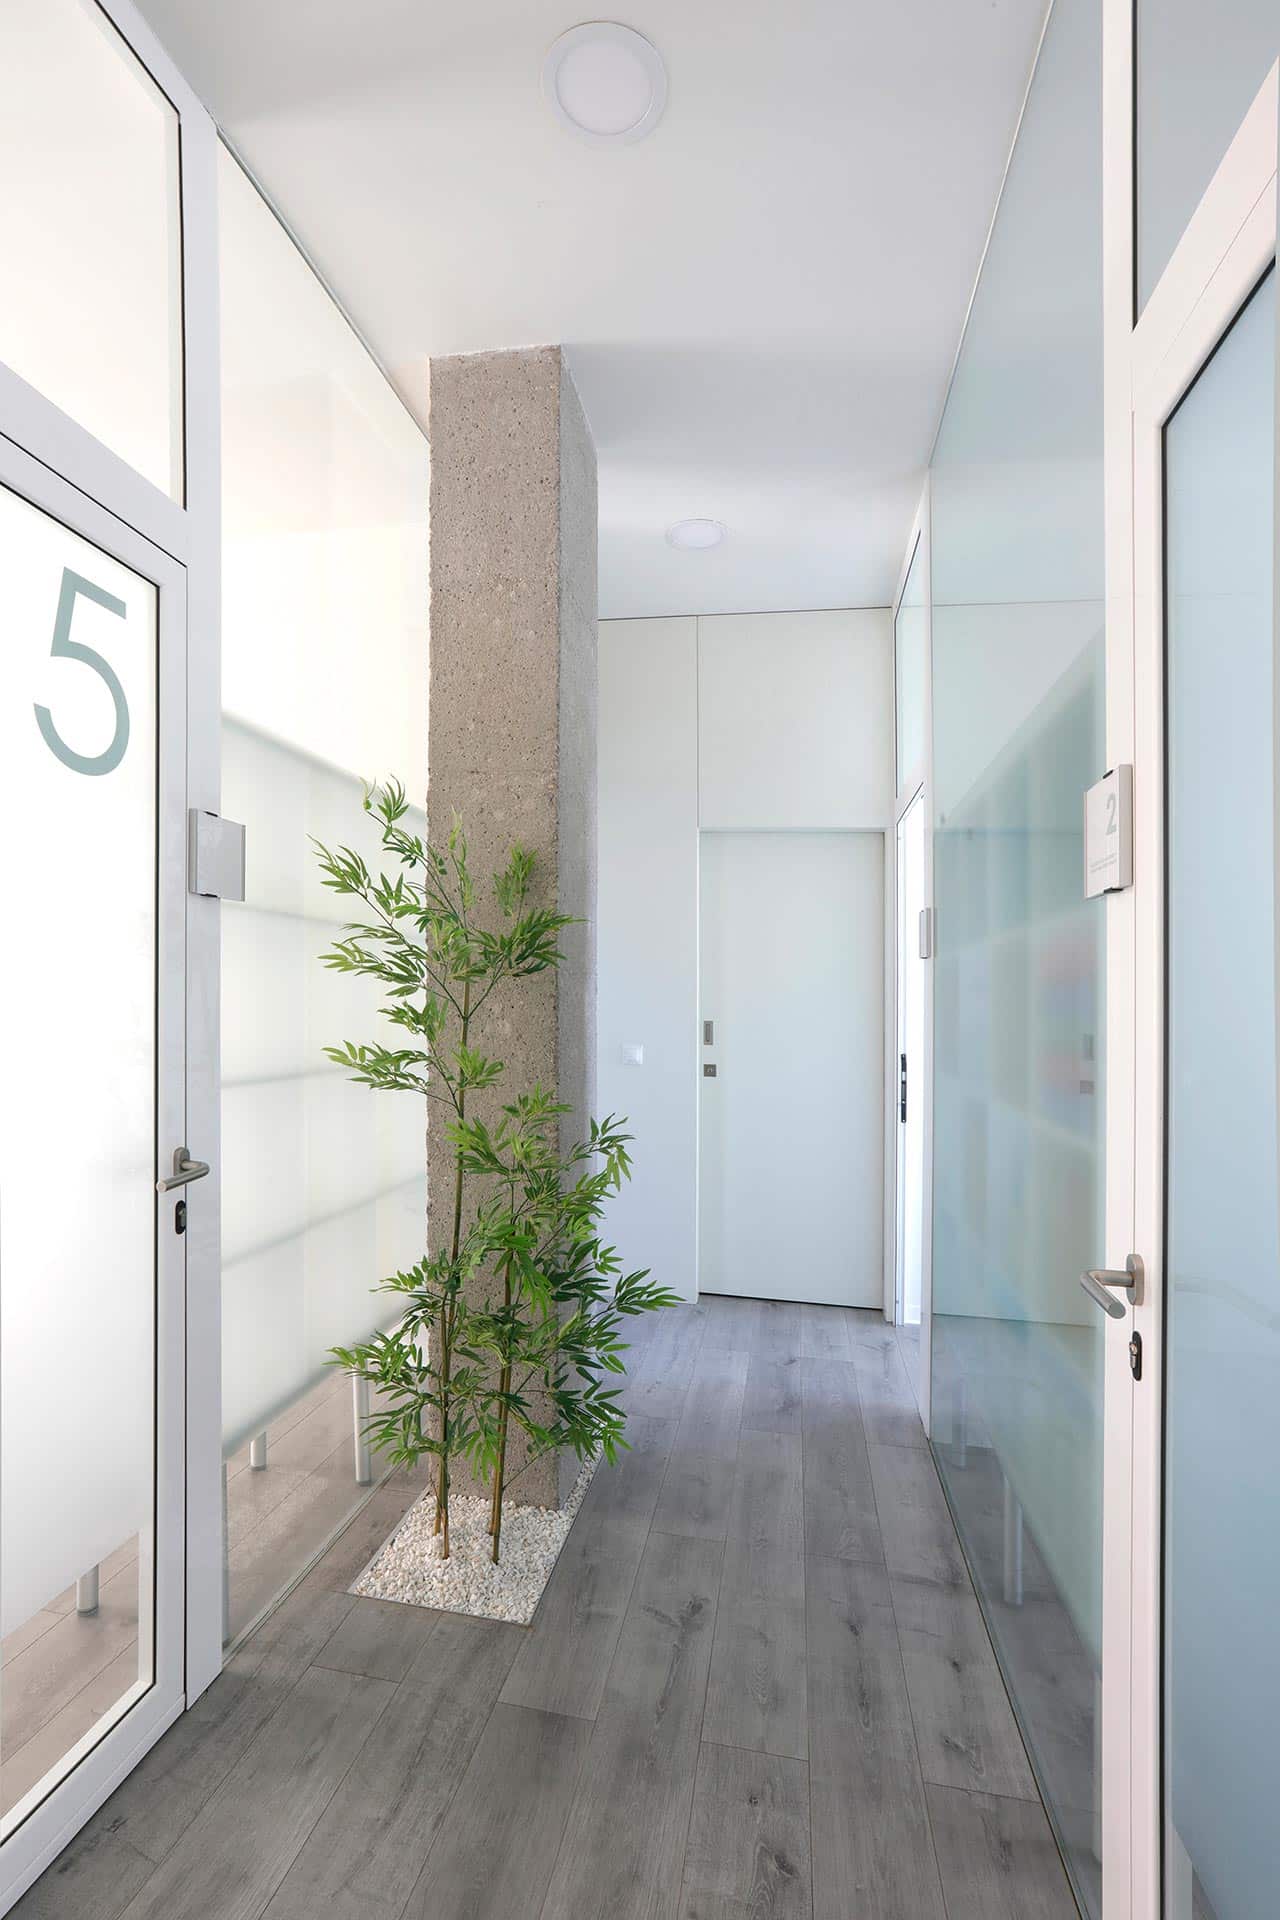 Pasillo de local de diseño con planta de bambú y suelo gris diseñado por Moah Arquitectos en Santander